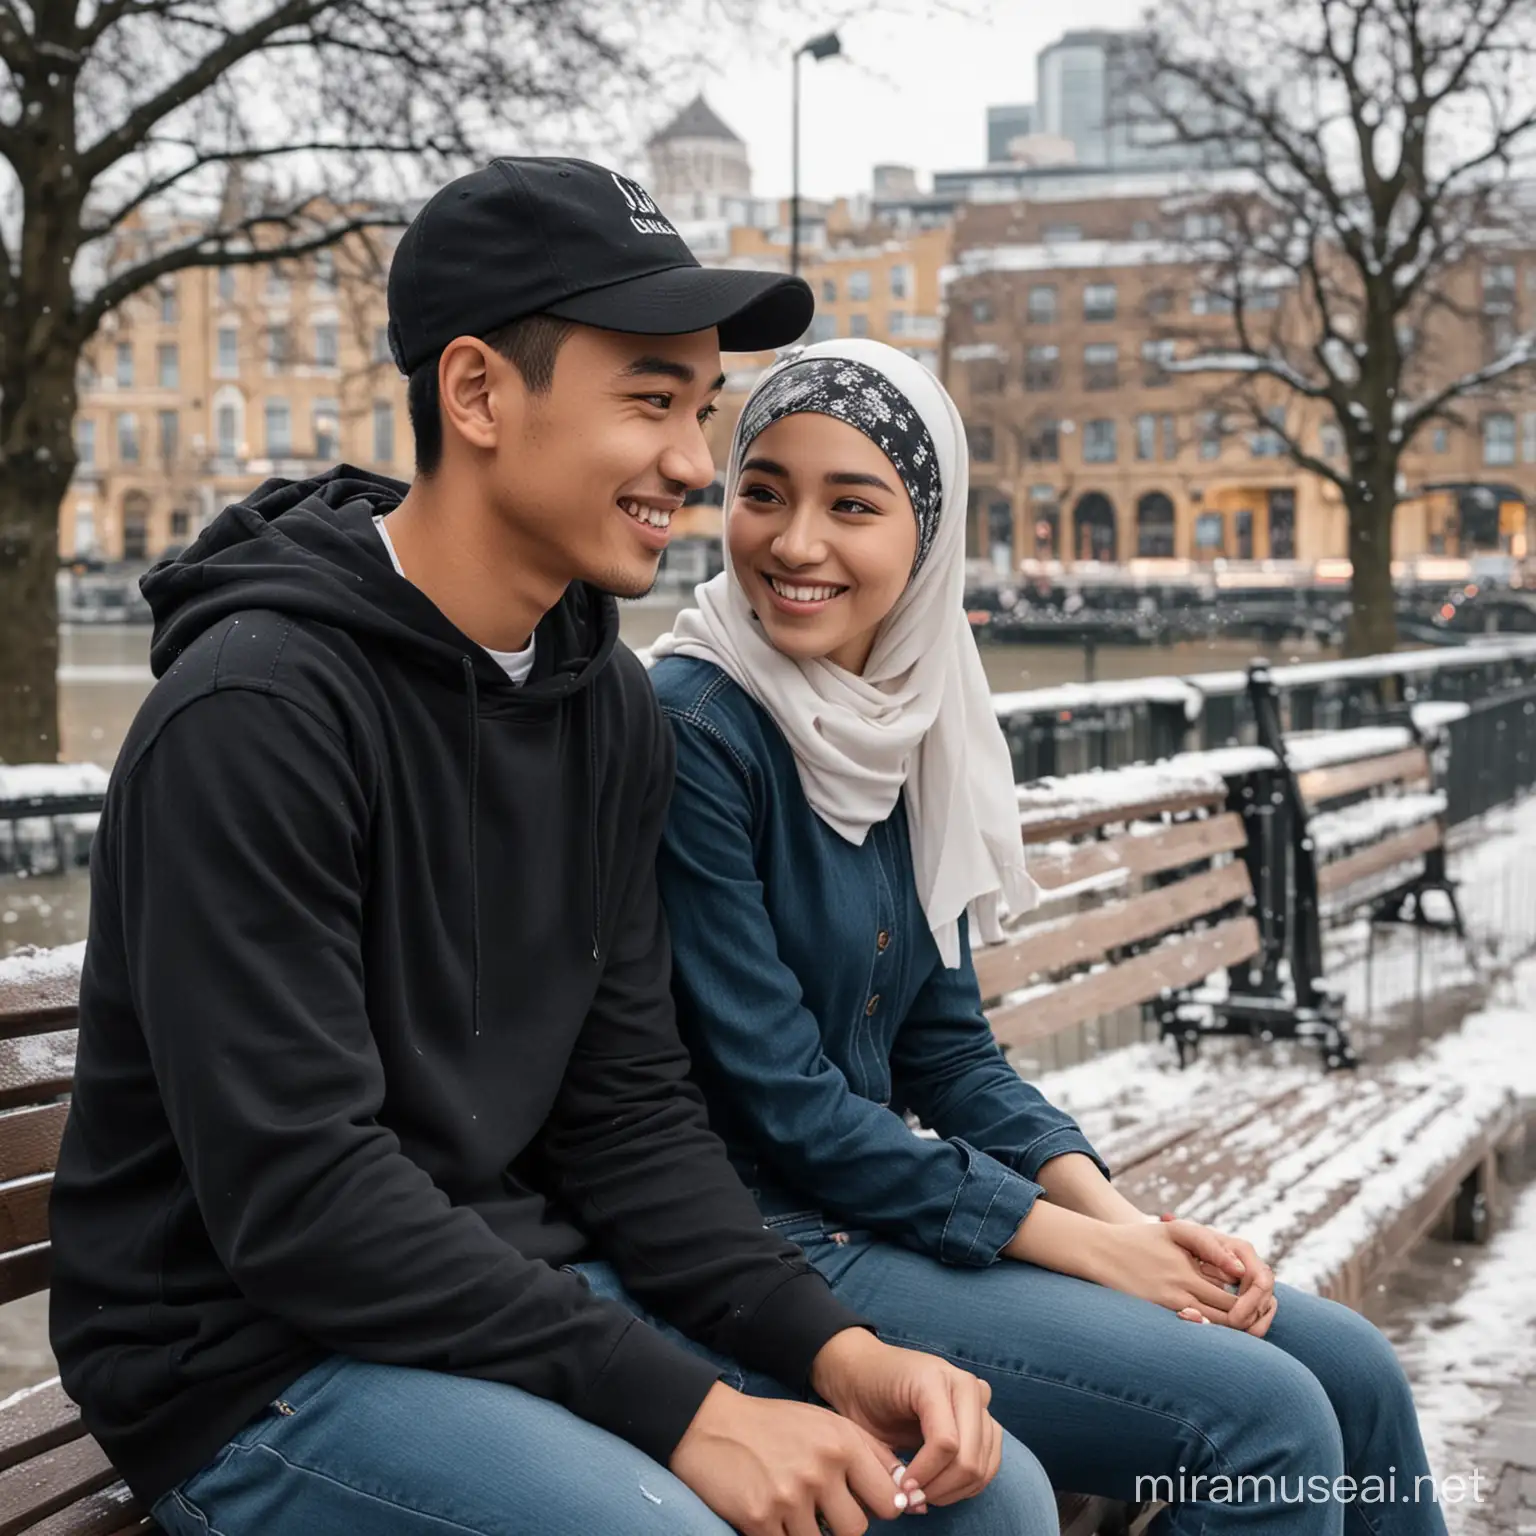 Se orang pria asia memakai topi baseball dan memakai kemeja hitam bersama seorang wanita memakai hijap celana jeans duduk di bangku taman dekat jembatan kota London, suasana bersalju, wajah tersenyum manis, mereka tampak bersahabat dan saling berpautan , sangat detail, sangat halus